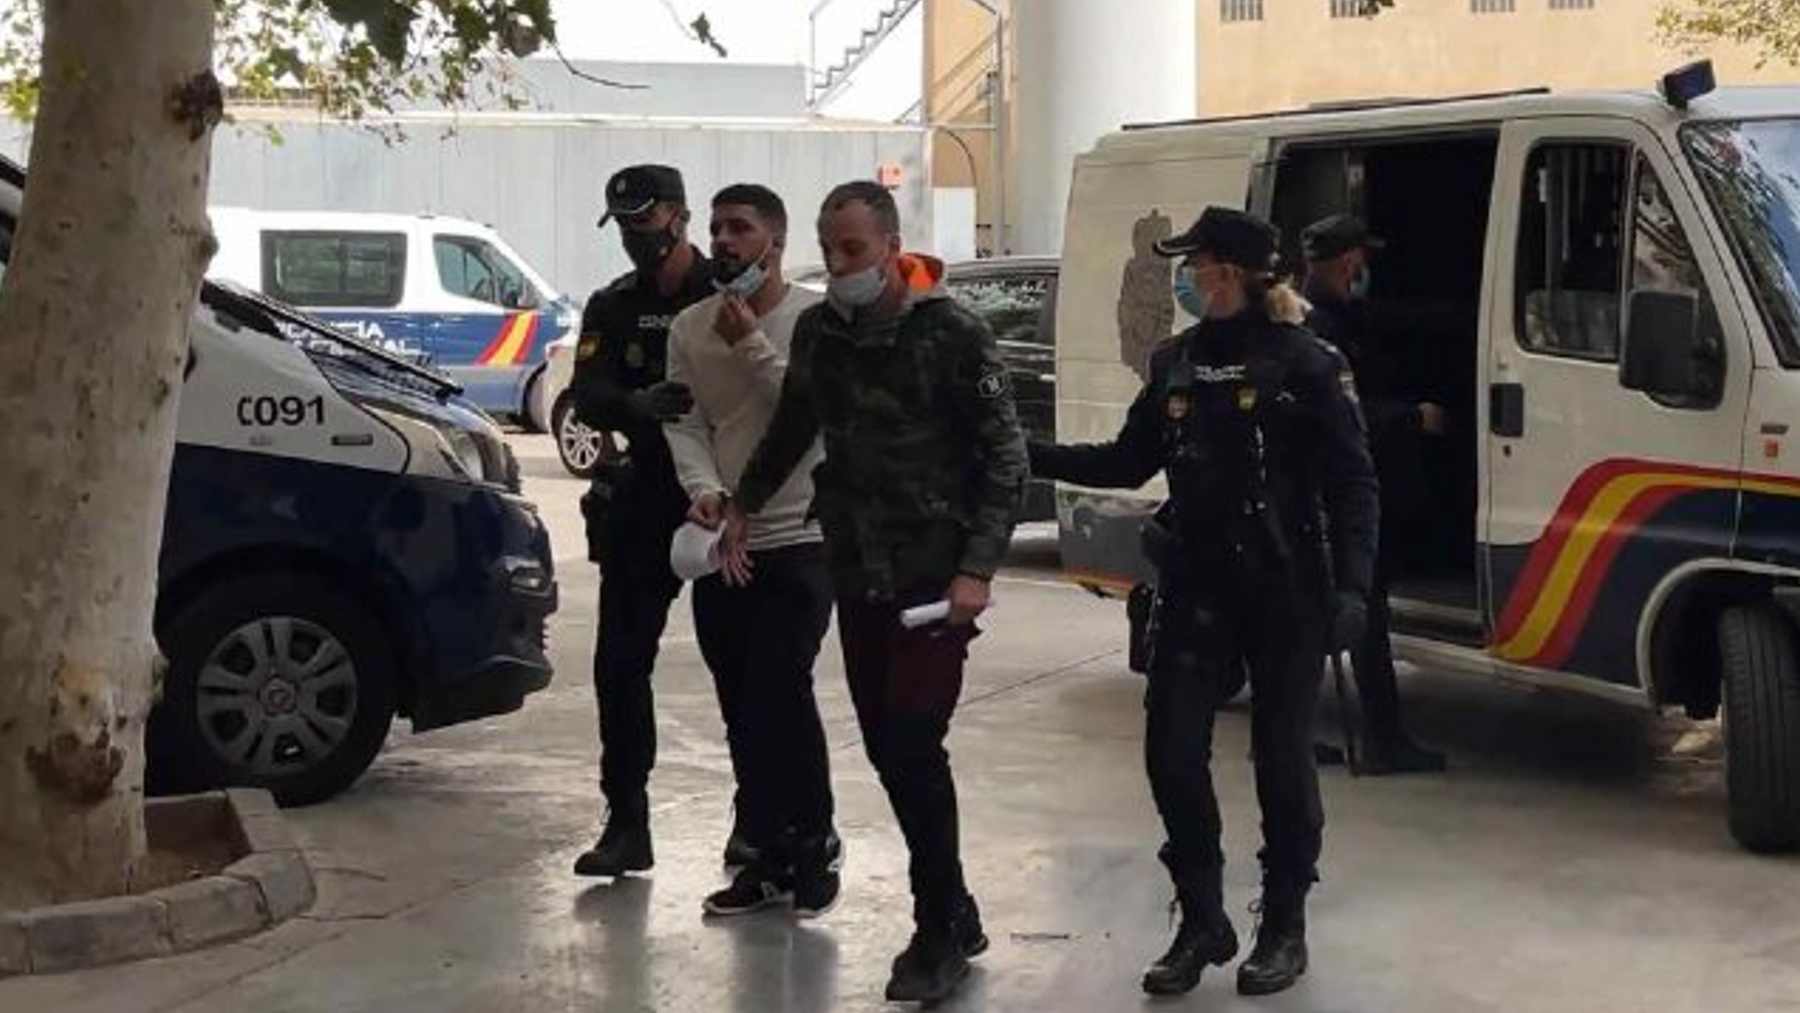 Dos de los detenidos que se dieron a la fuga del avión patera que aterrizó en noviembre en Palma.